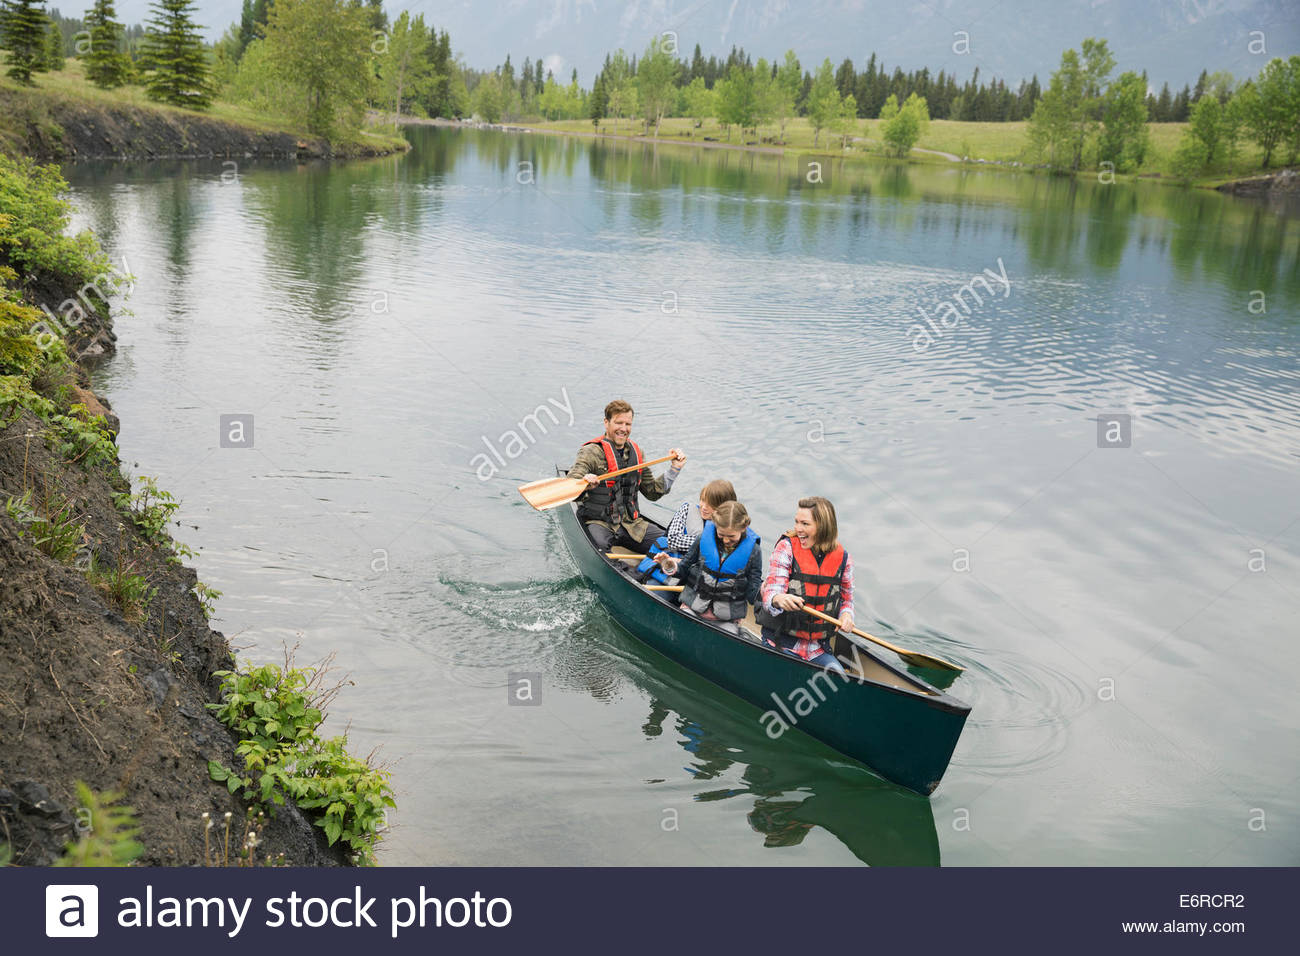 Family rowing canoe in still lake Stock Photo